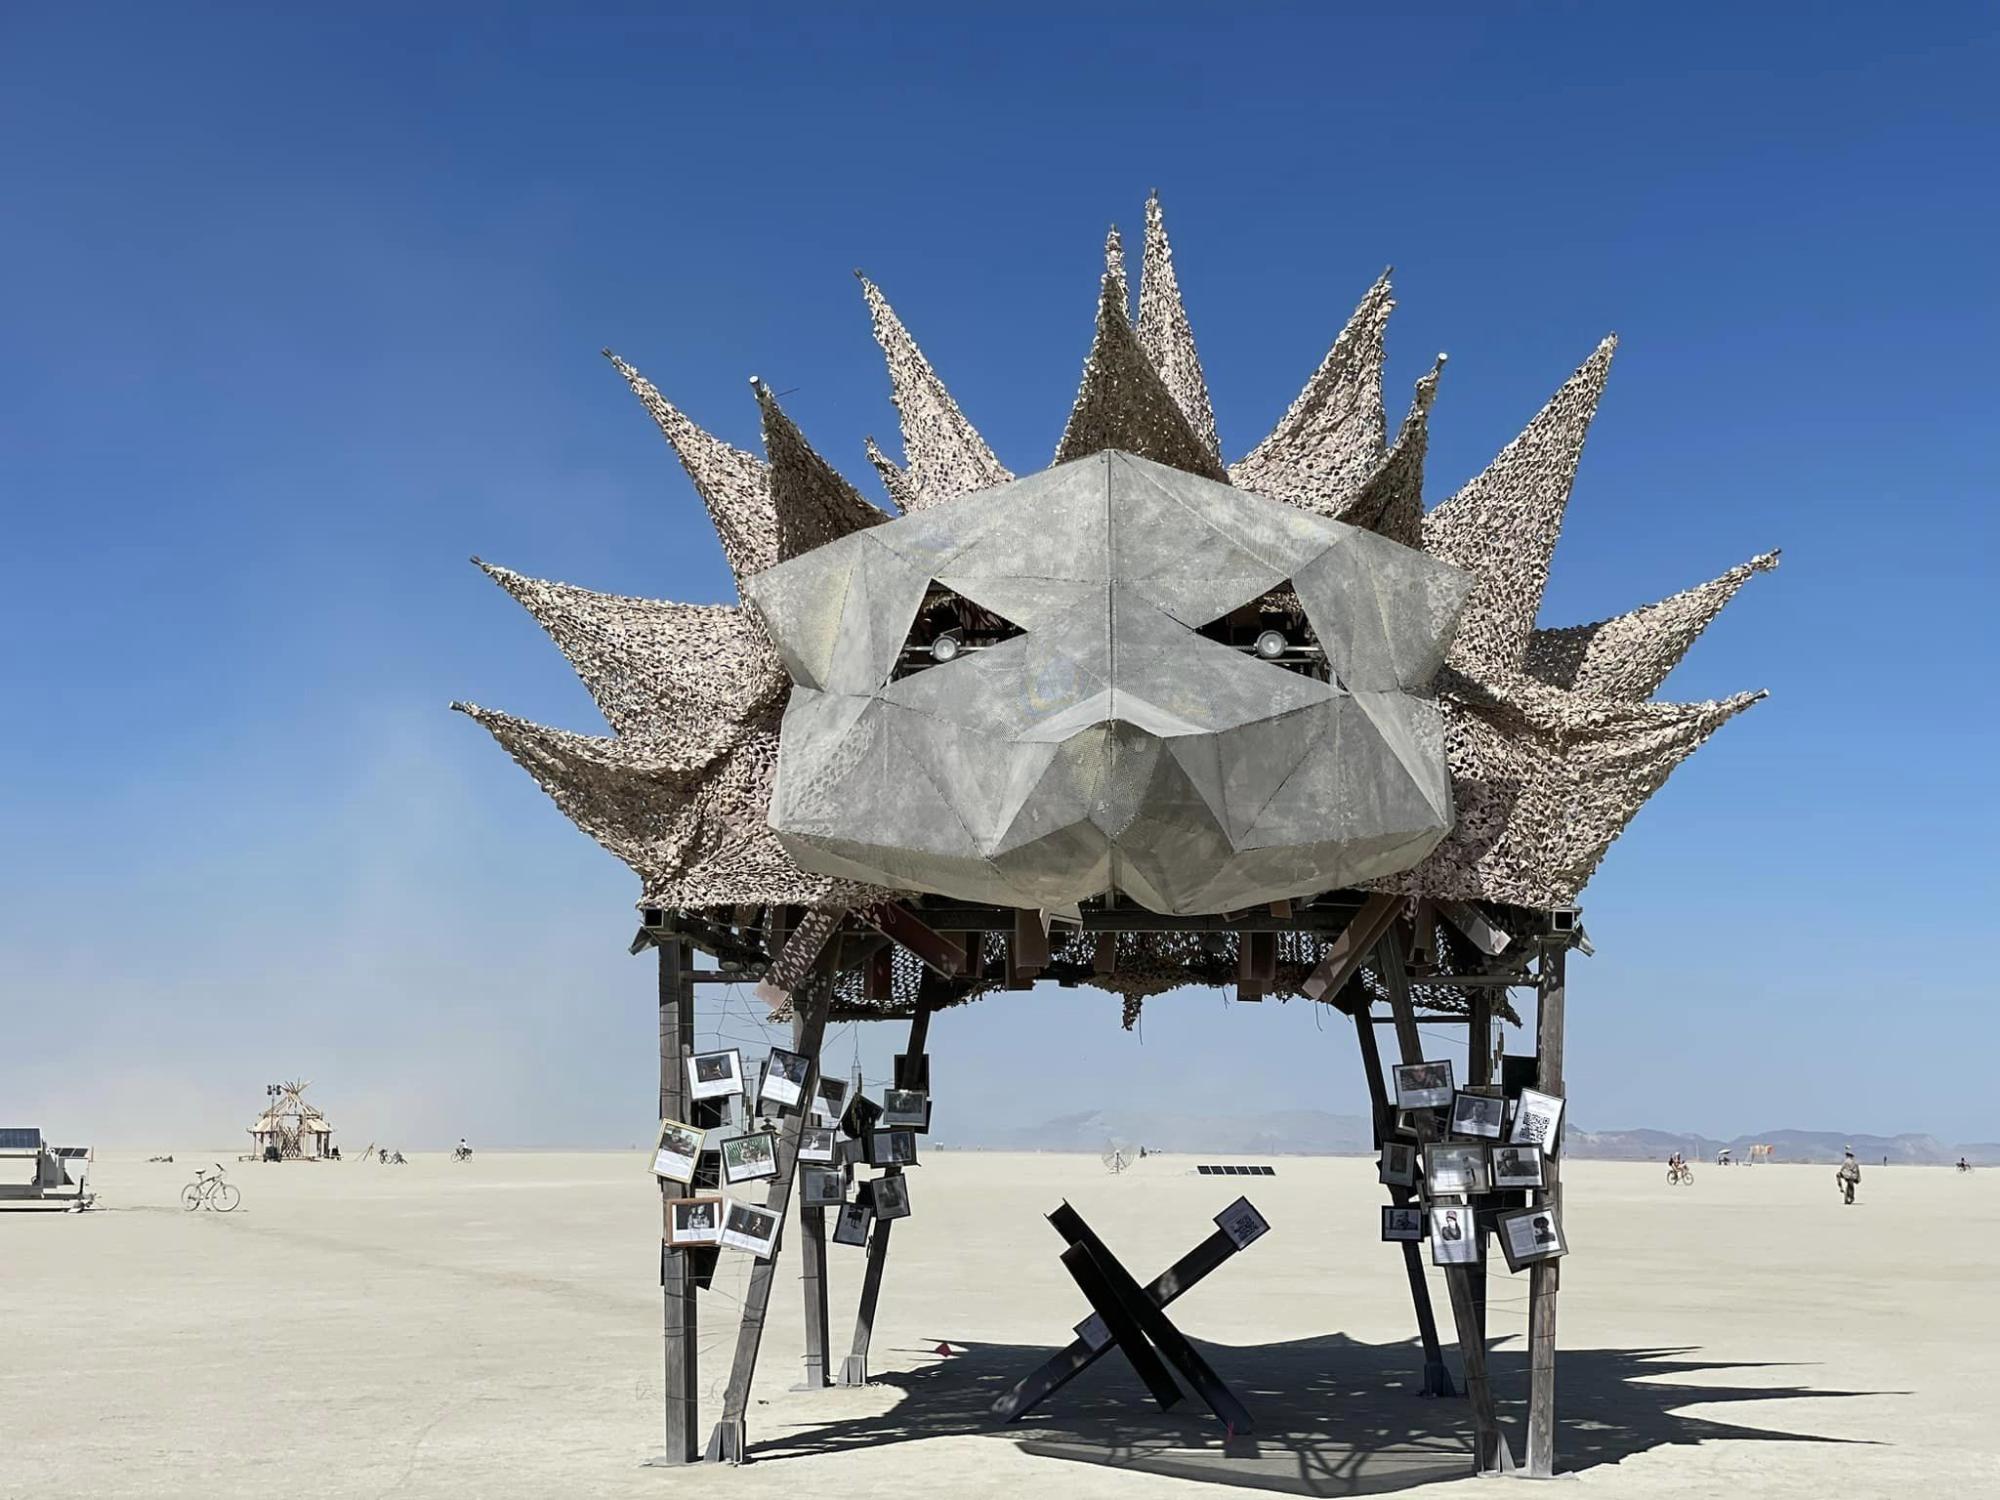 Украинцы создали скульптуру из противотанковых ежей на фестивале Burning man в США (фото) фото 1